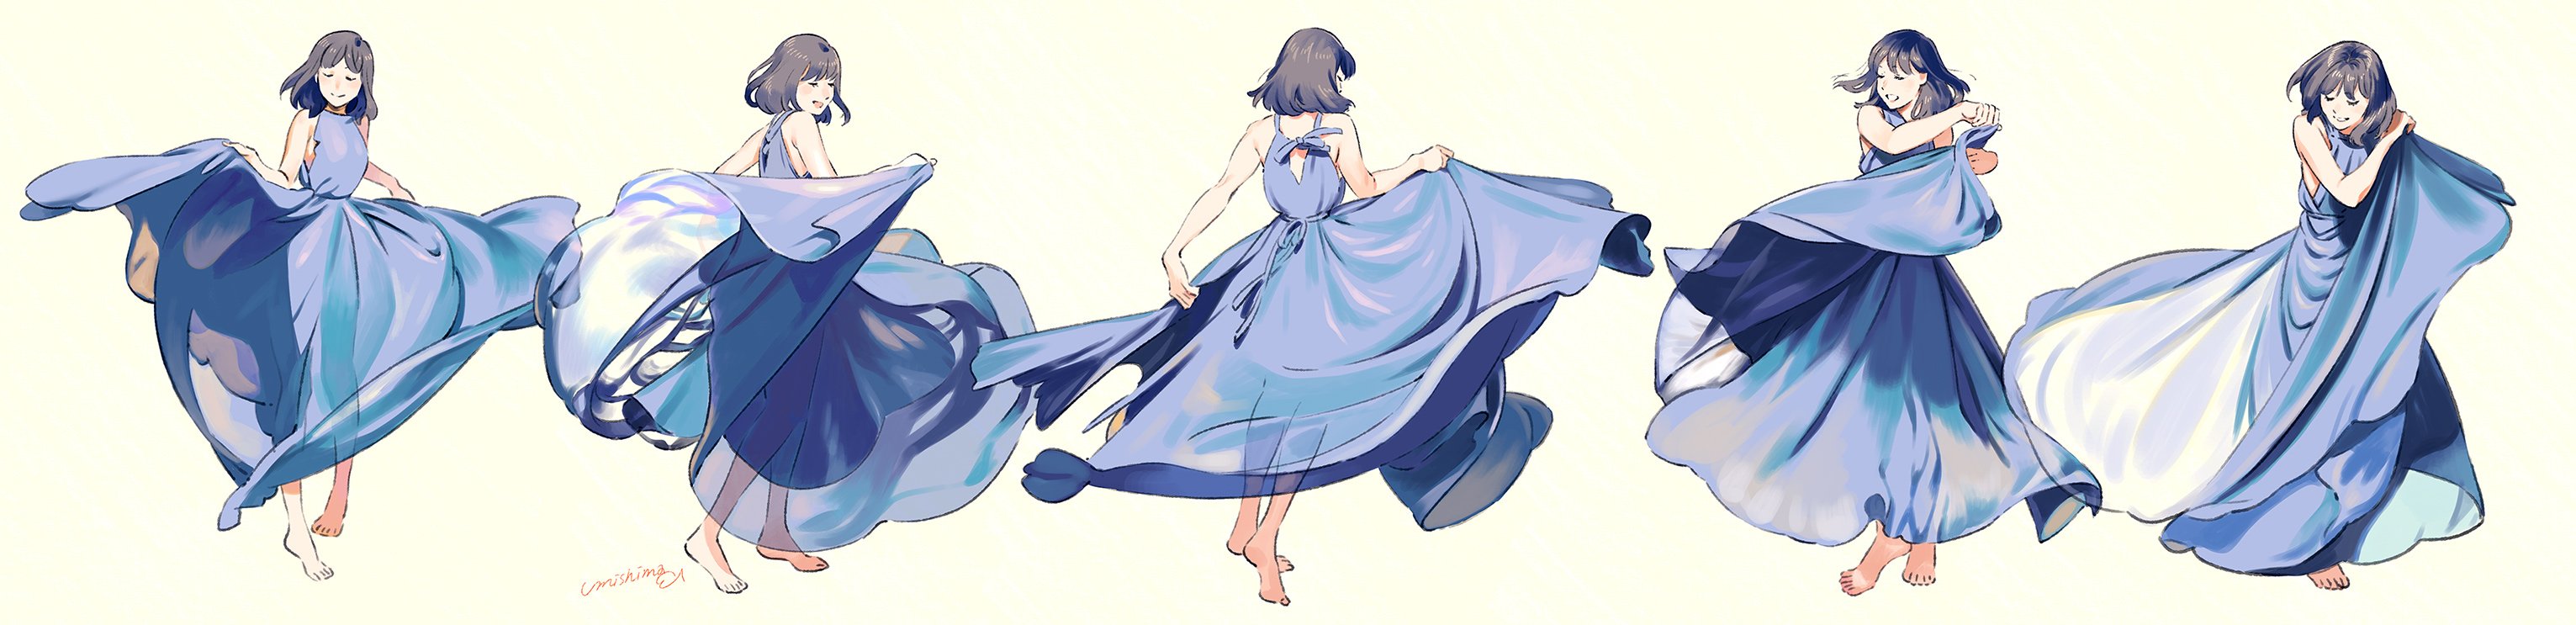 Девушка в платье аниме развивается